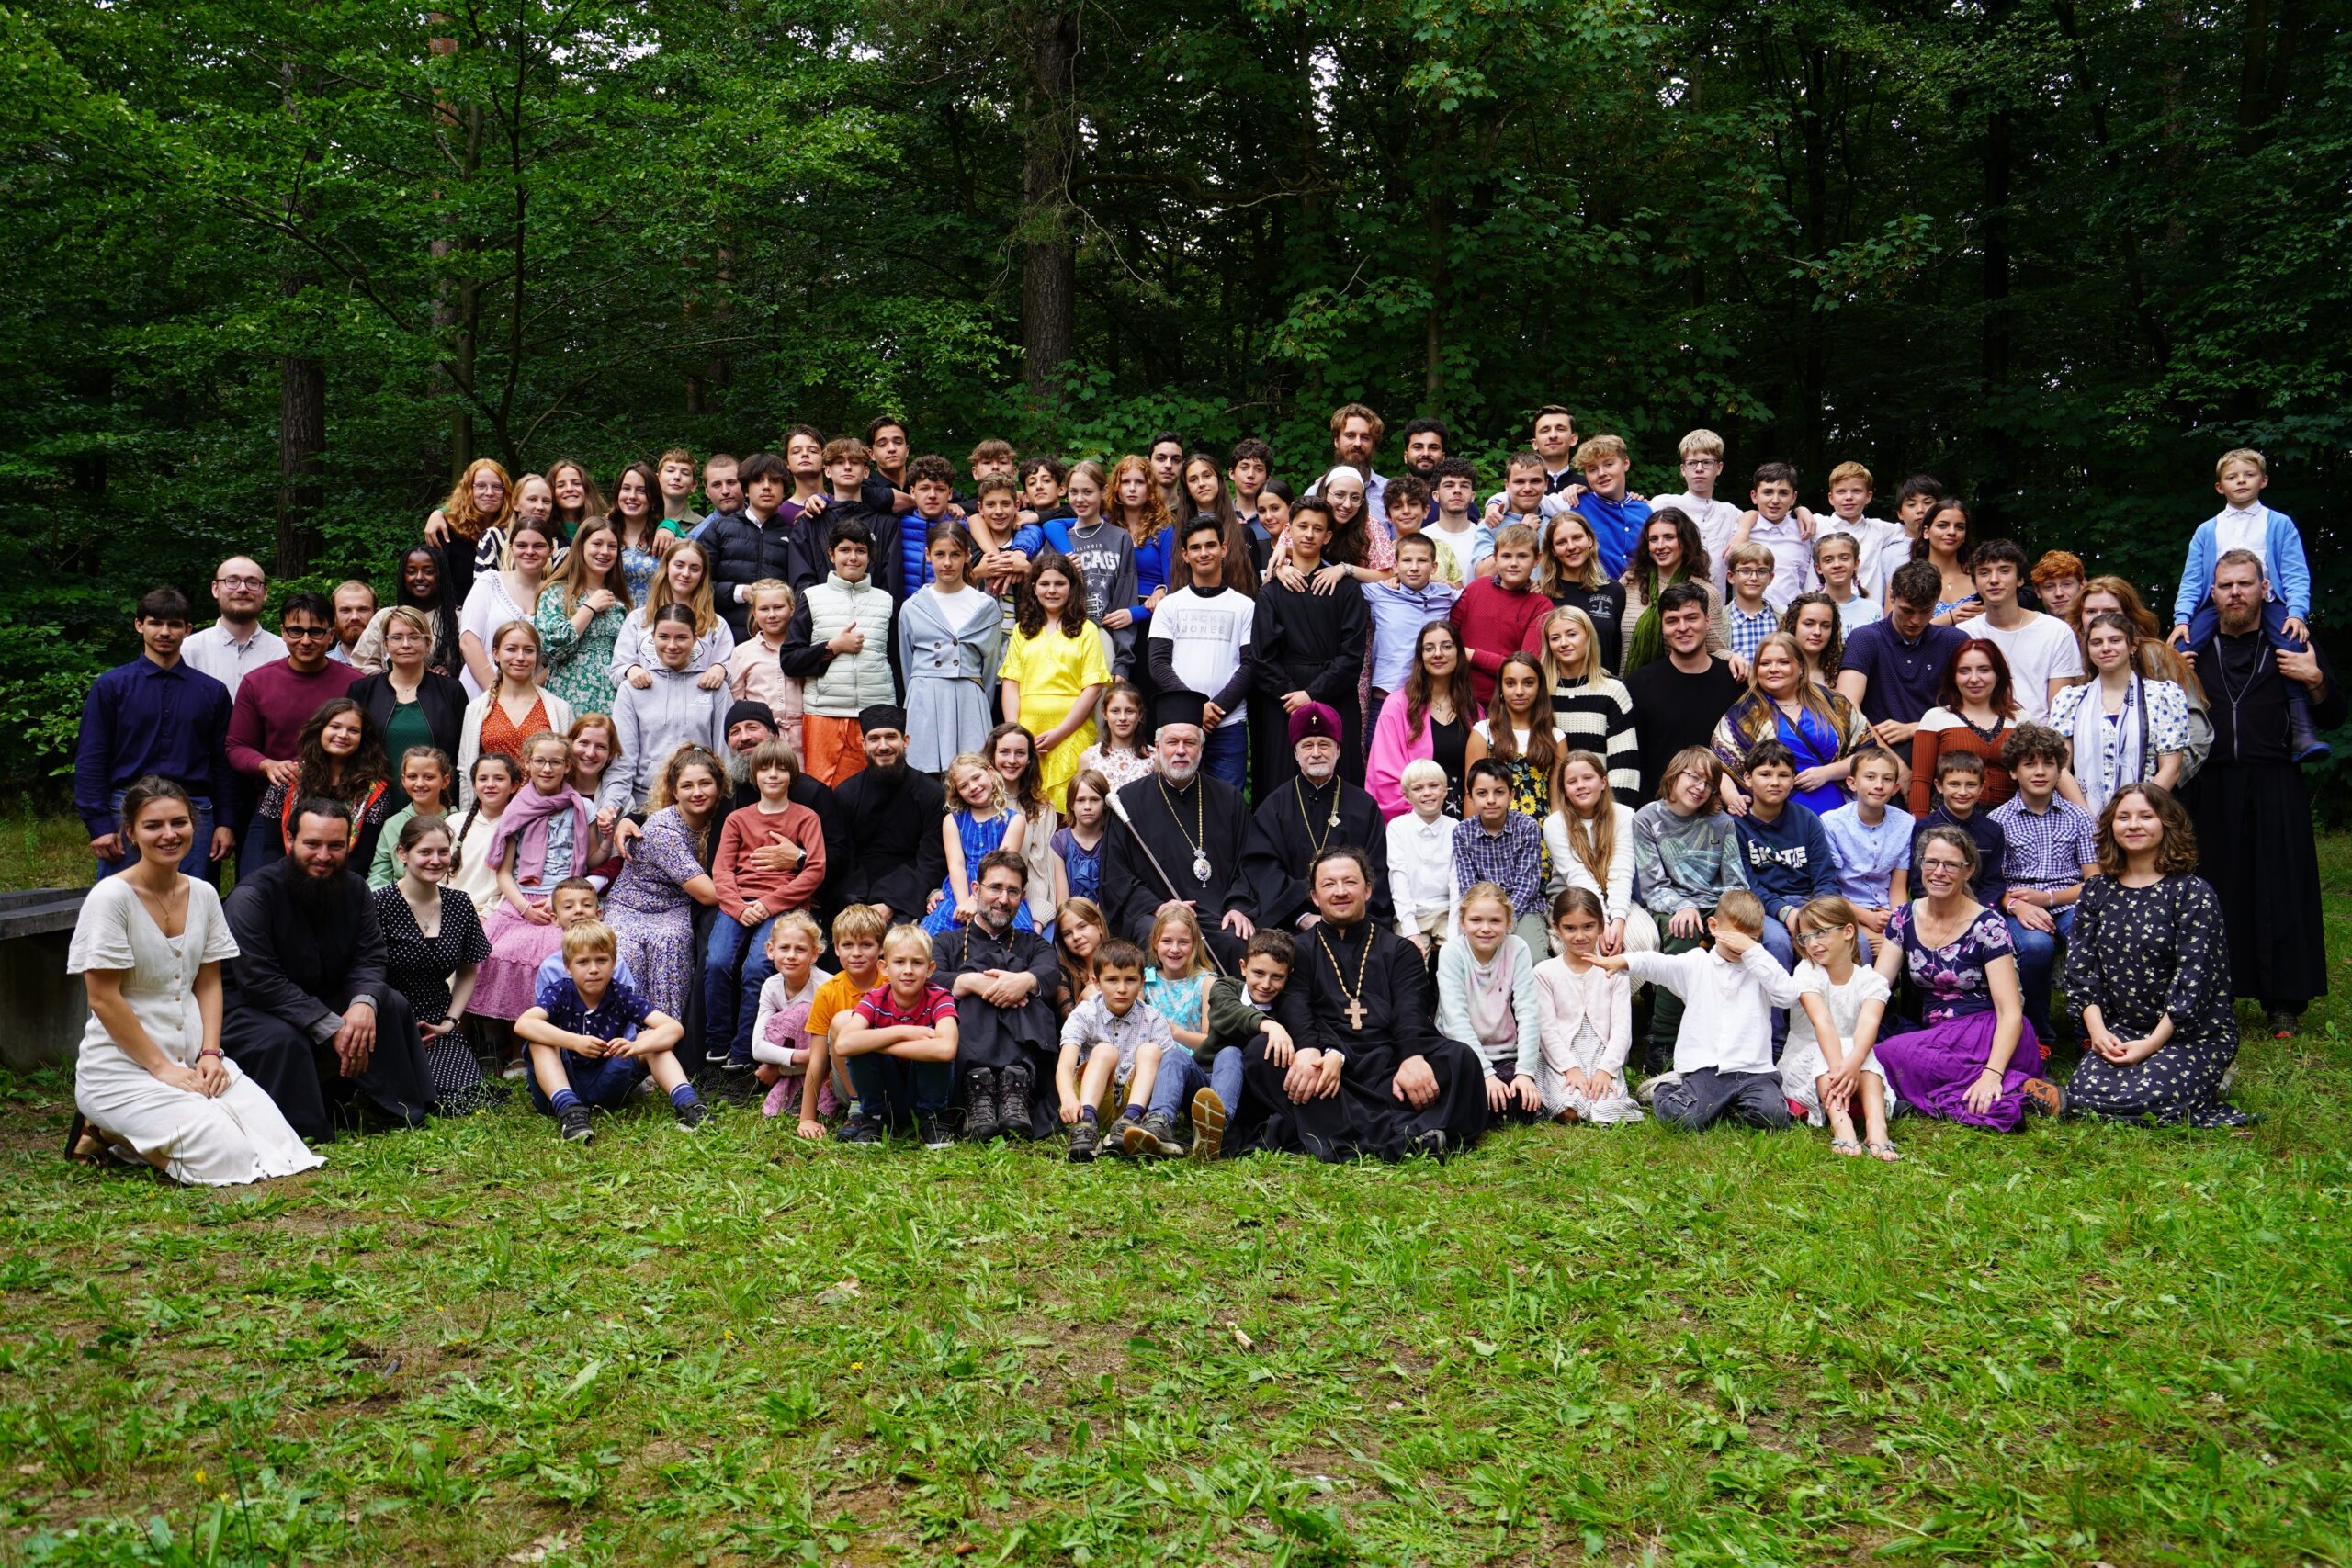 Le métropolite Athénagoras de Belgique a visité le camp d’été orthodoxe du Benelux